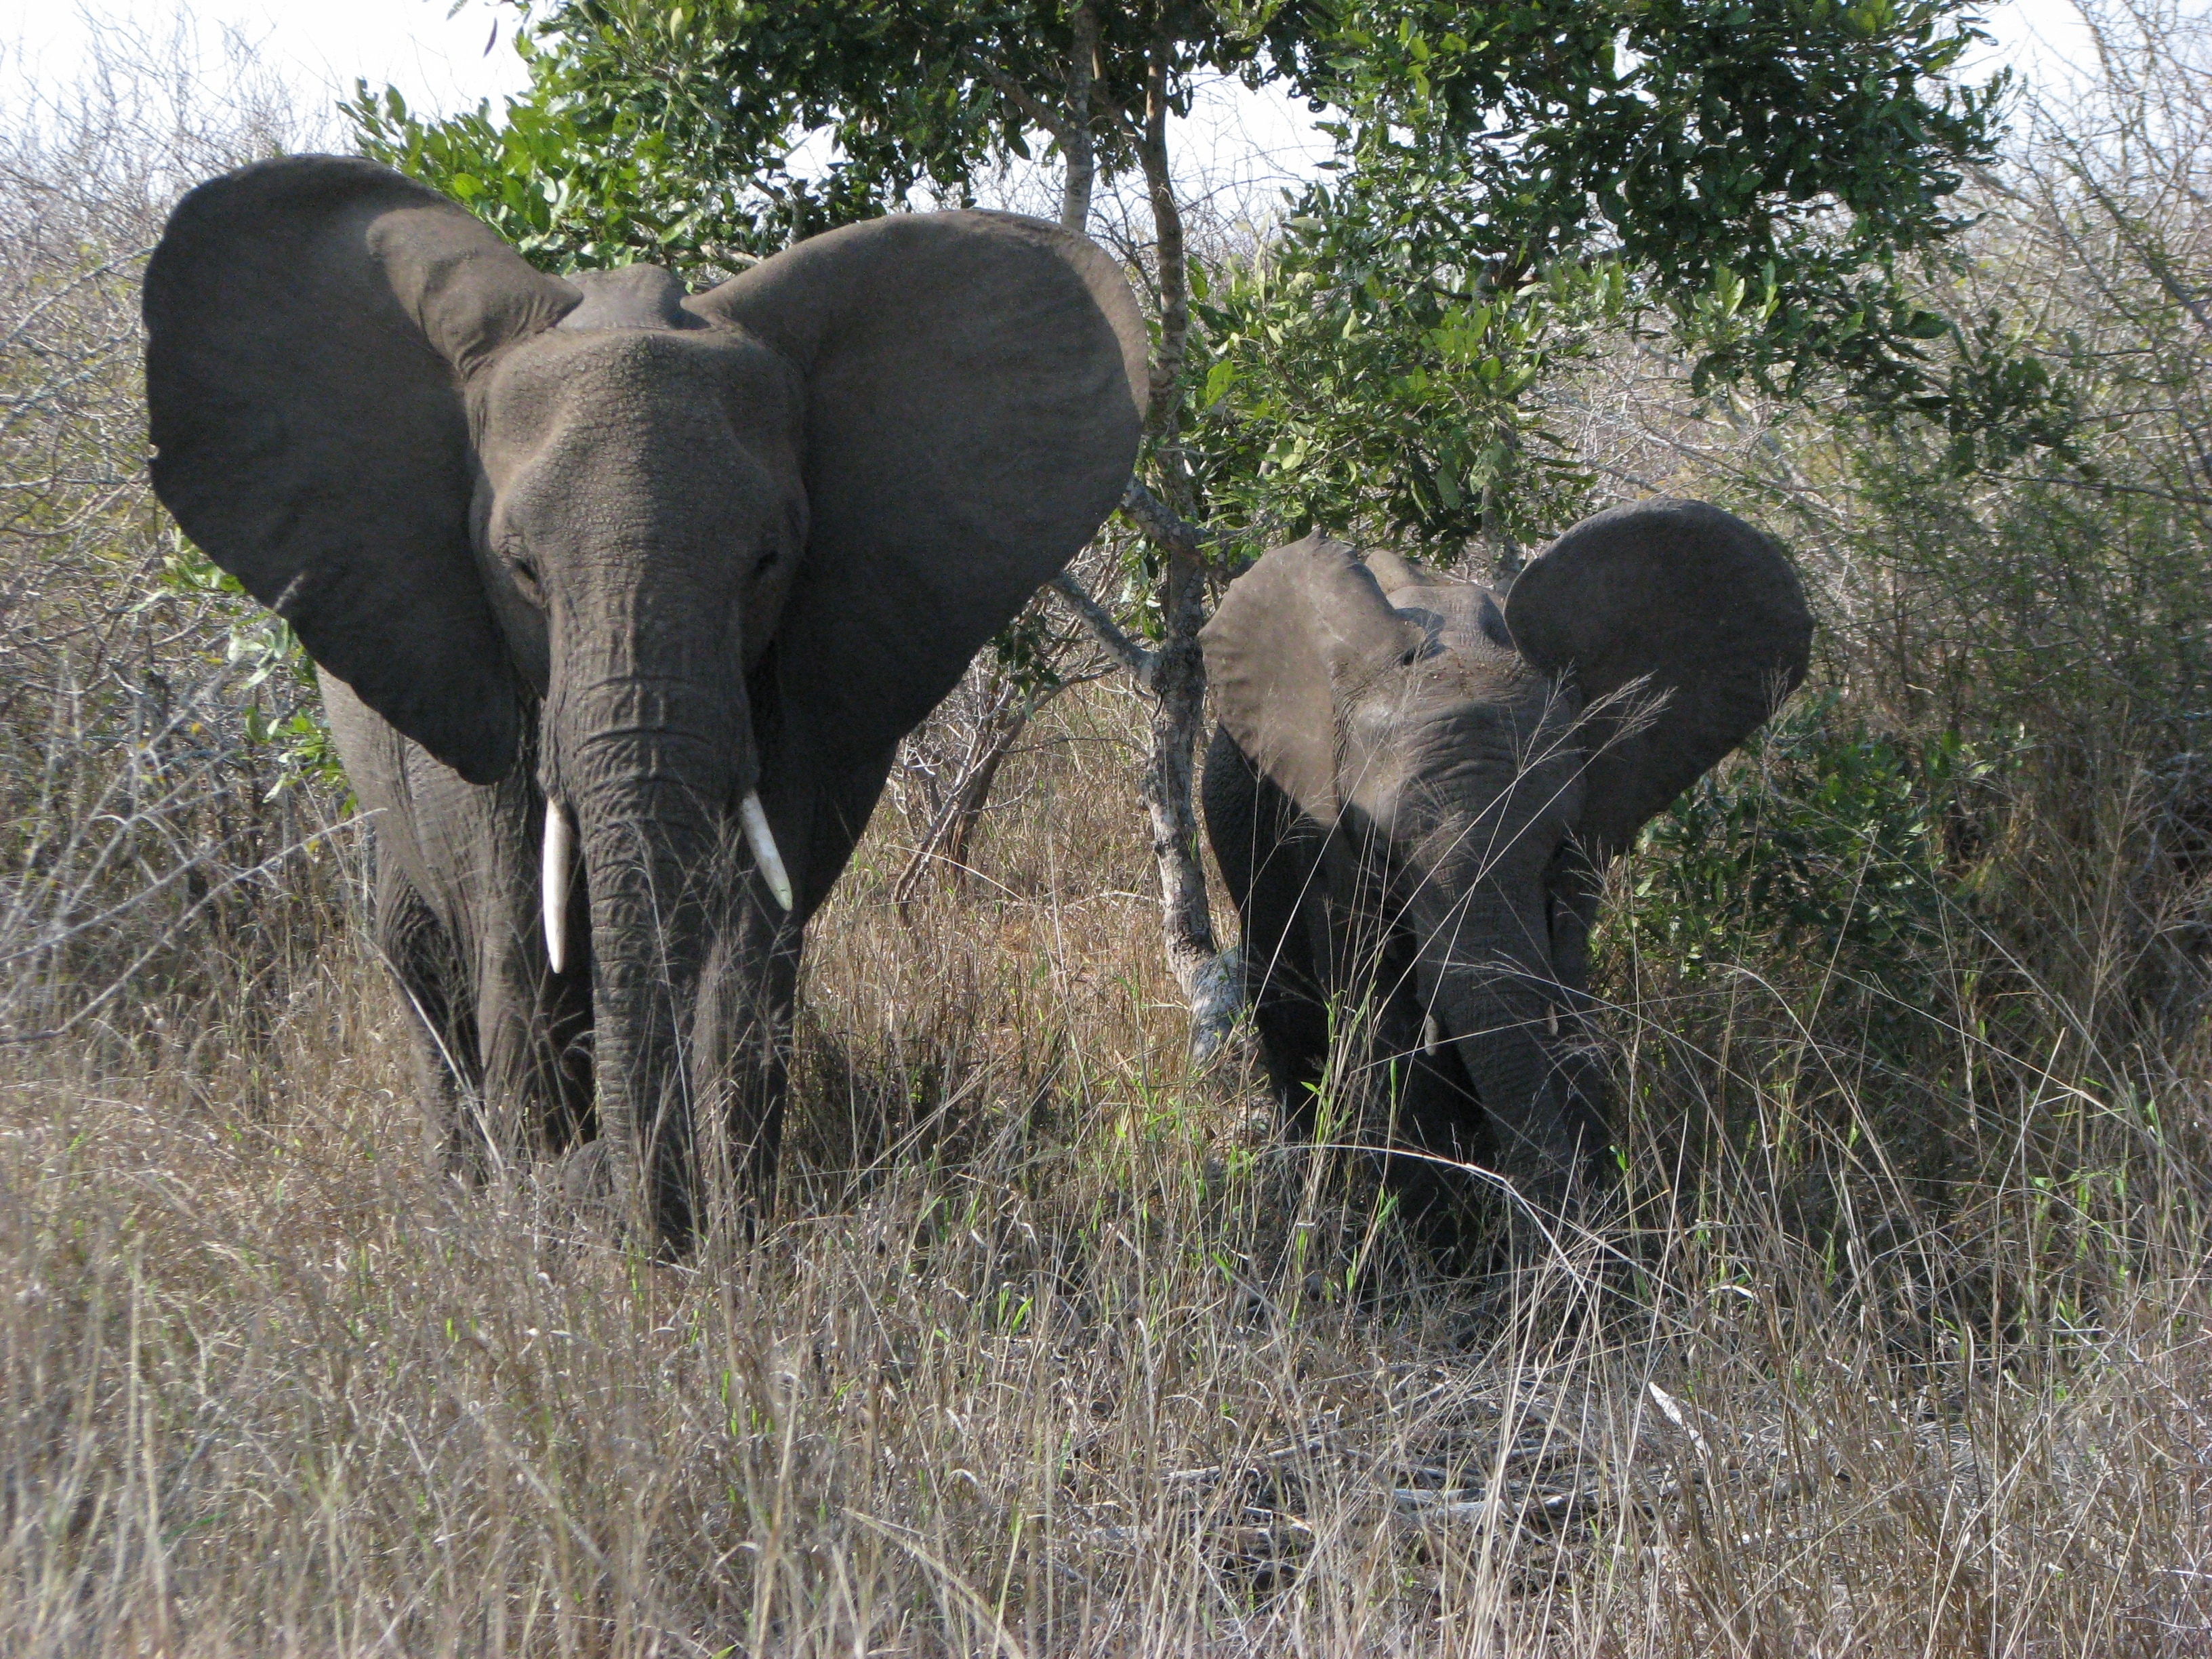 2 grey elephants